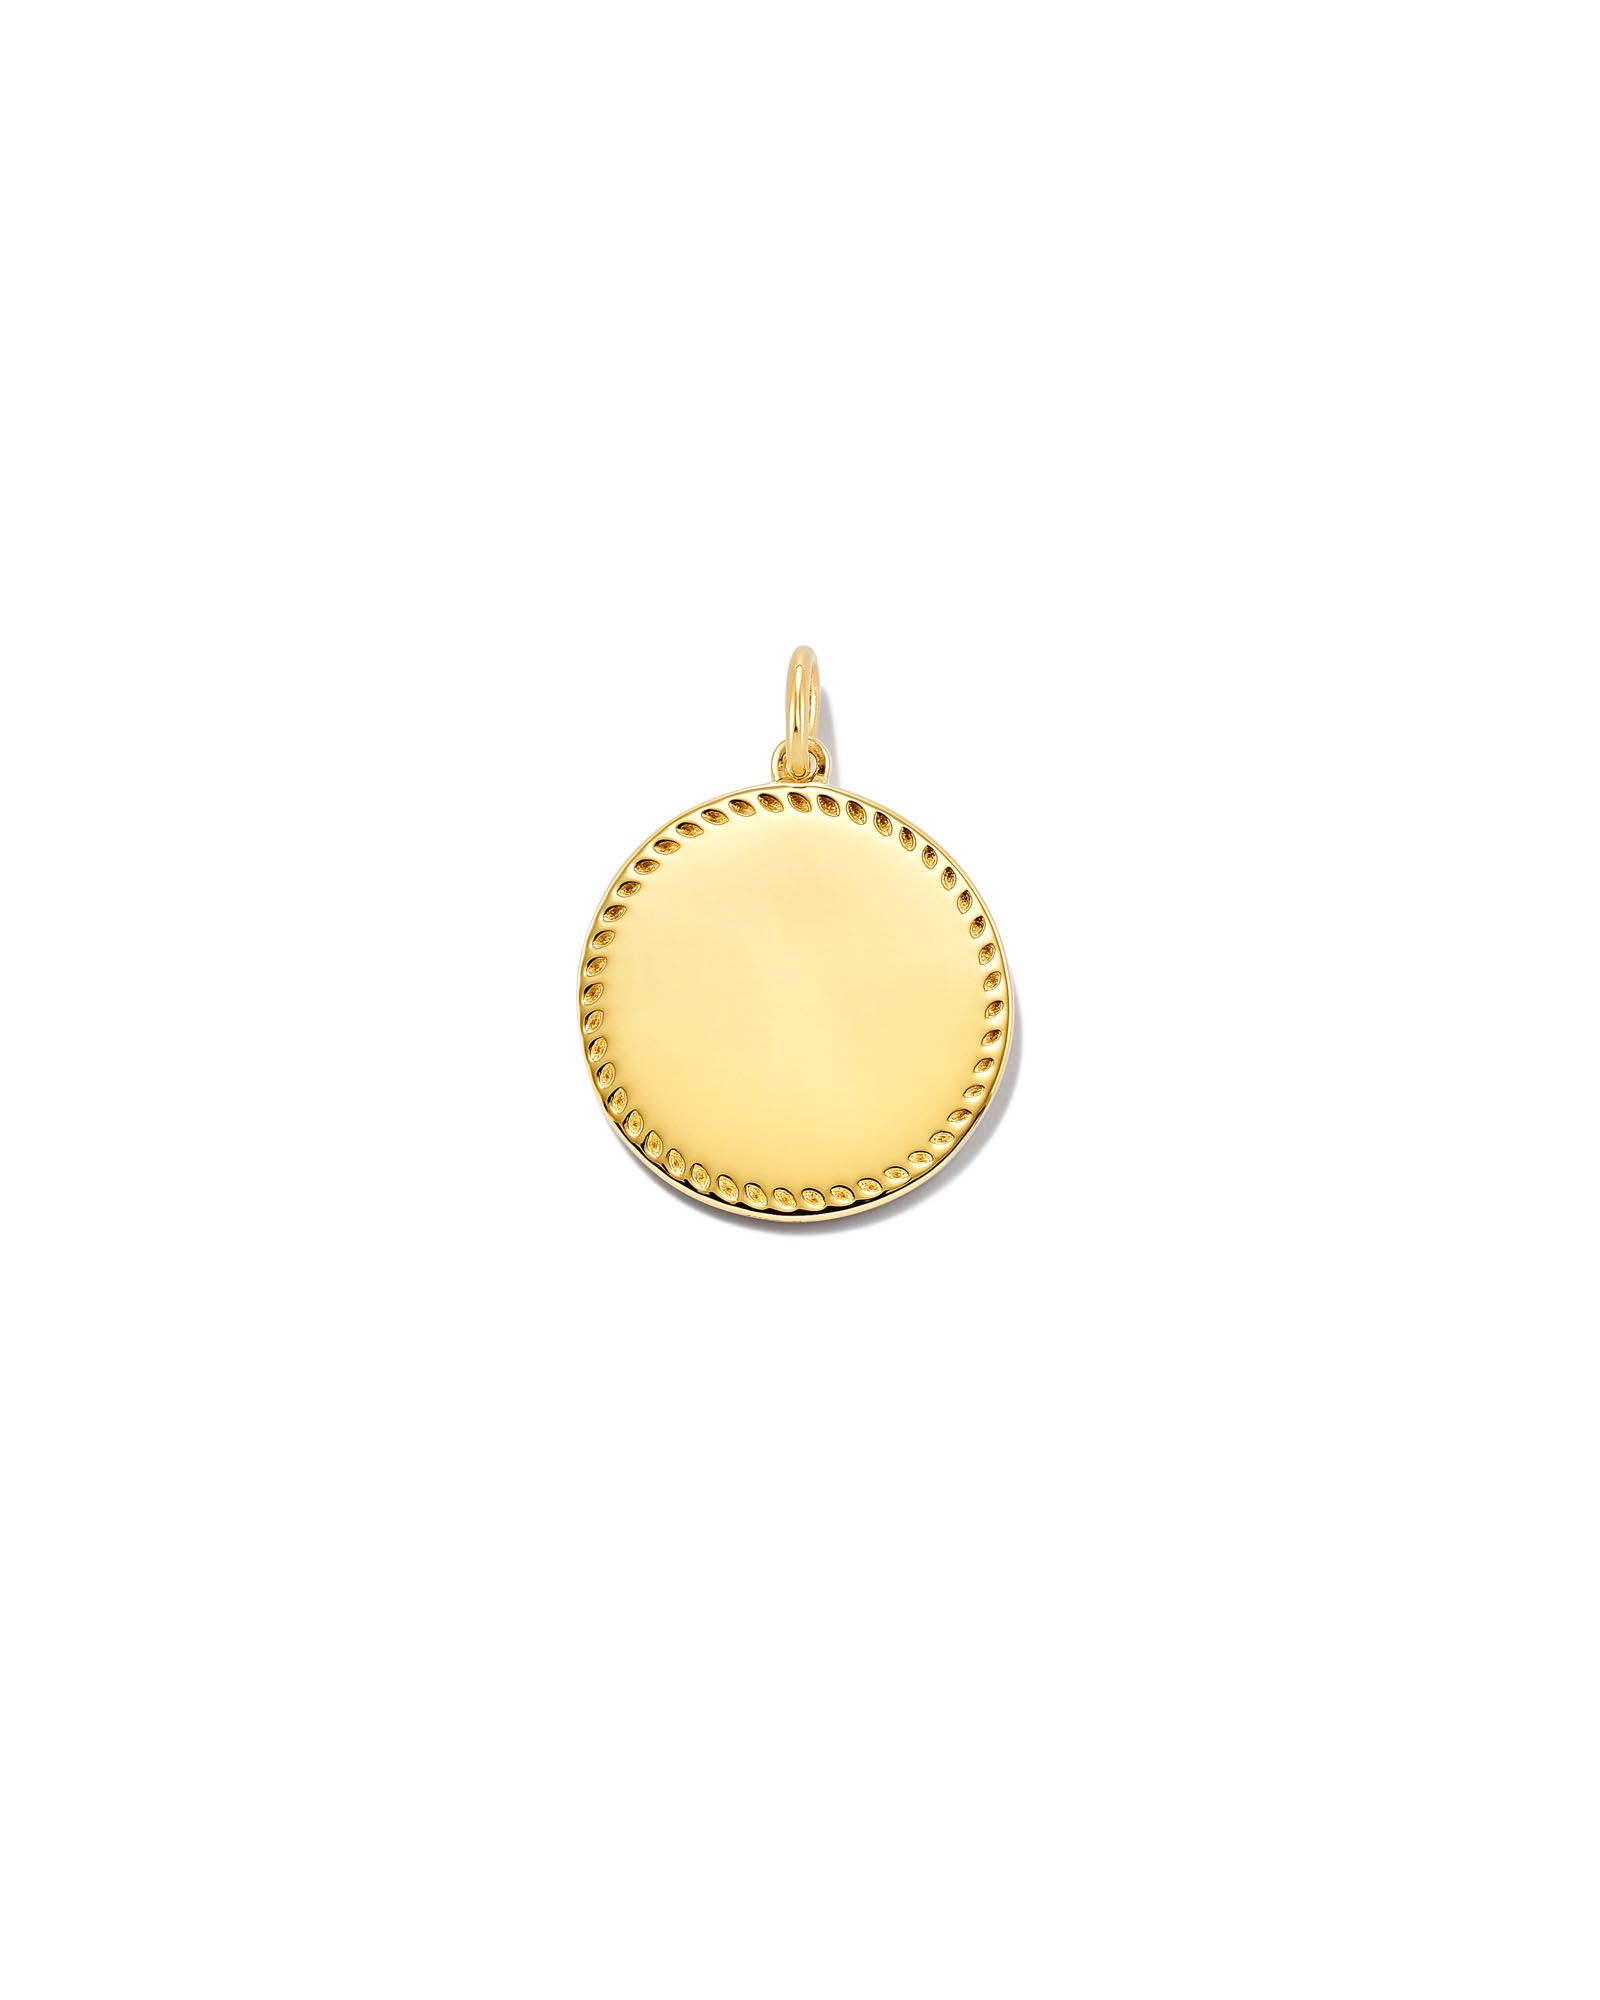 Aubree Charm in 18k Gold Vermeil | Kendra Scott | Kendra Scott